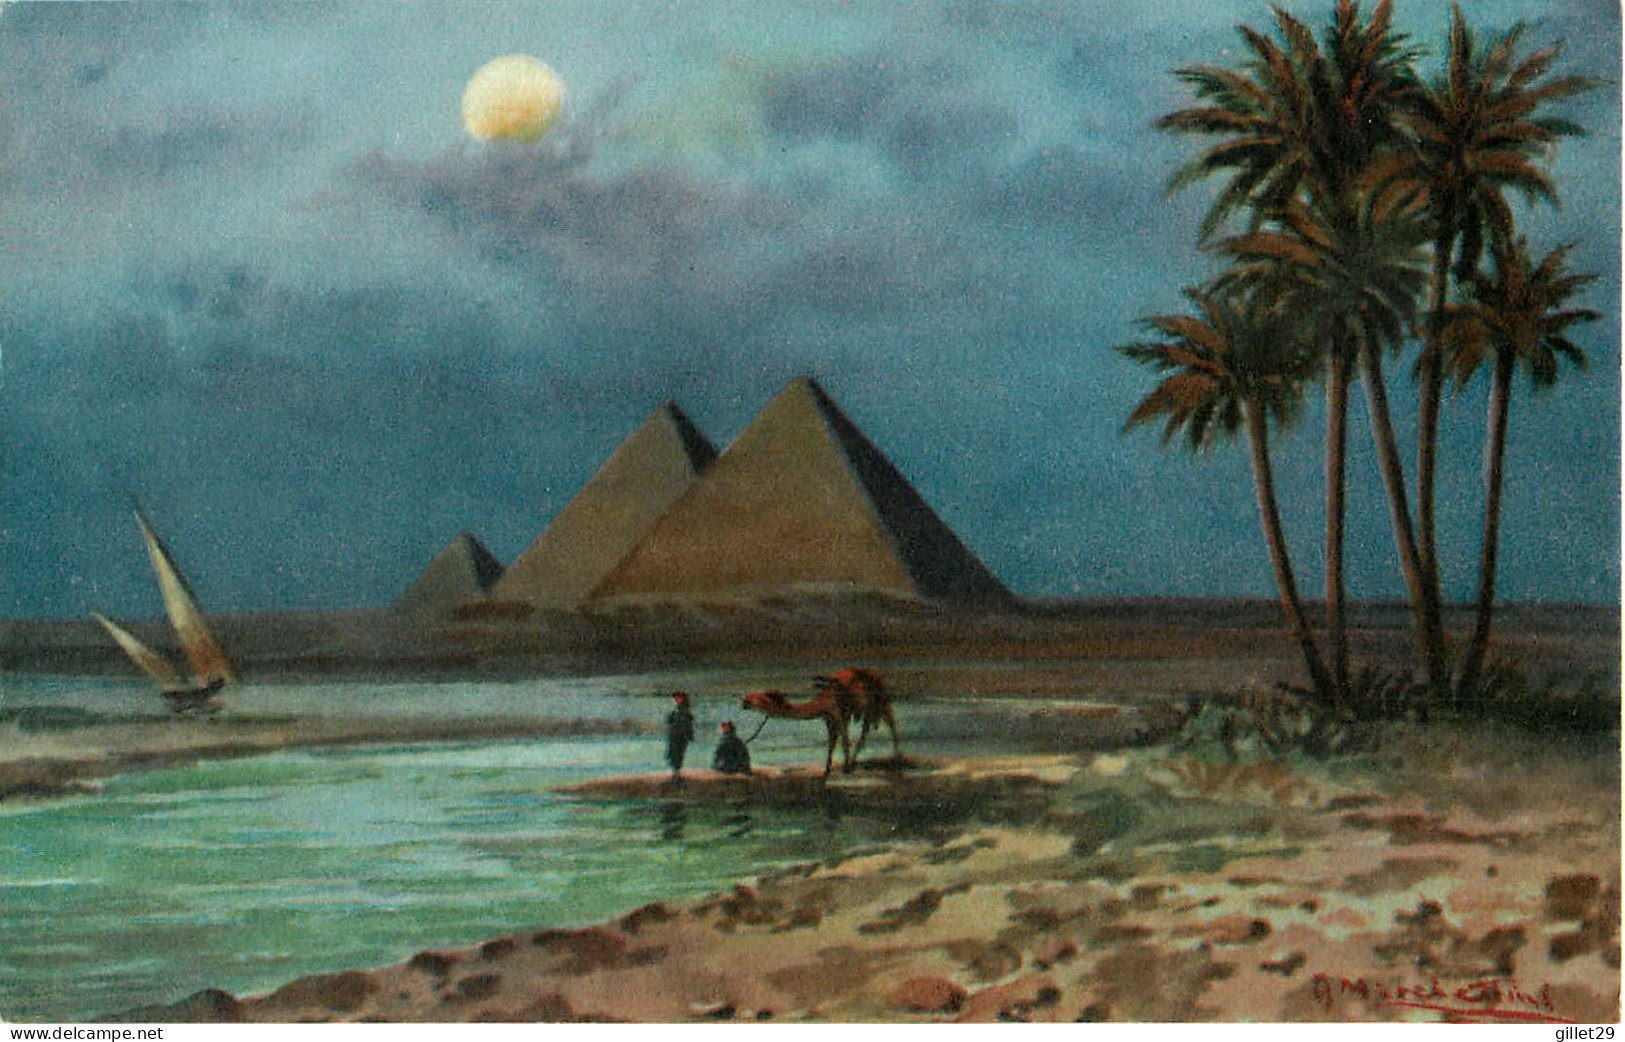 CAIRO, EGYPTE - THE PYRAMID AT MOONLIGHT - LEHNERT & LANDROCK - - Sphynx